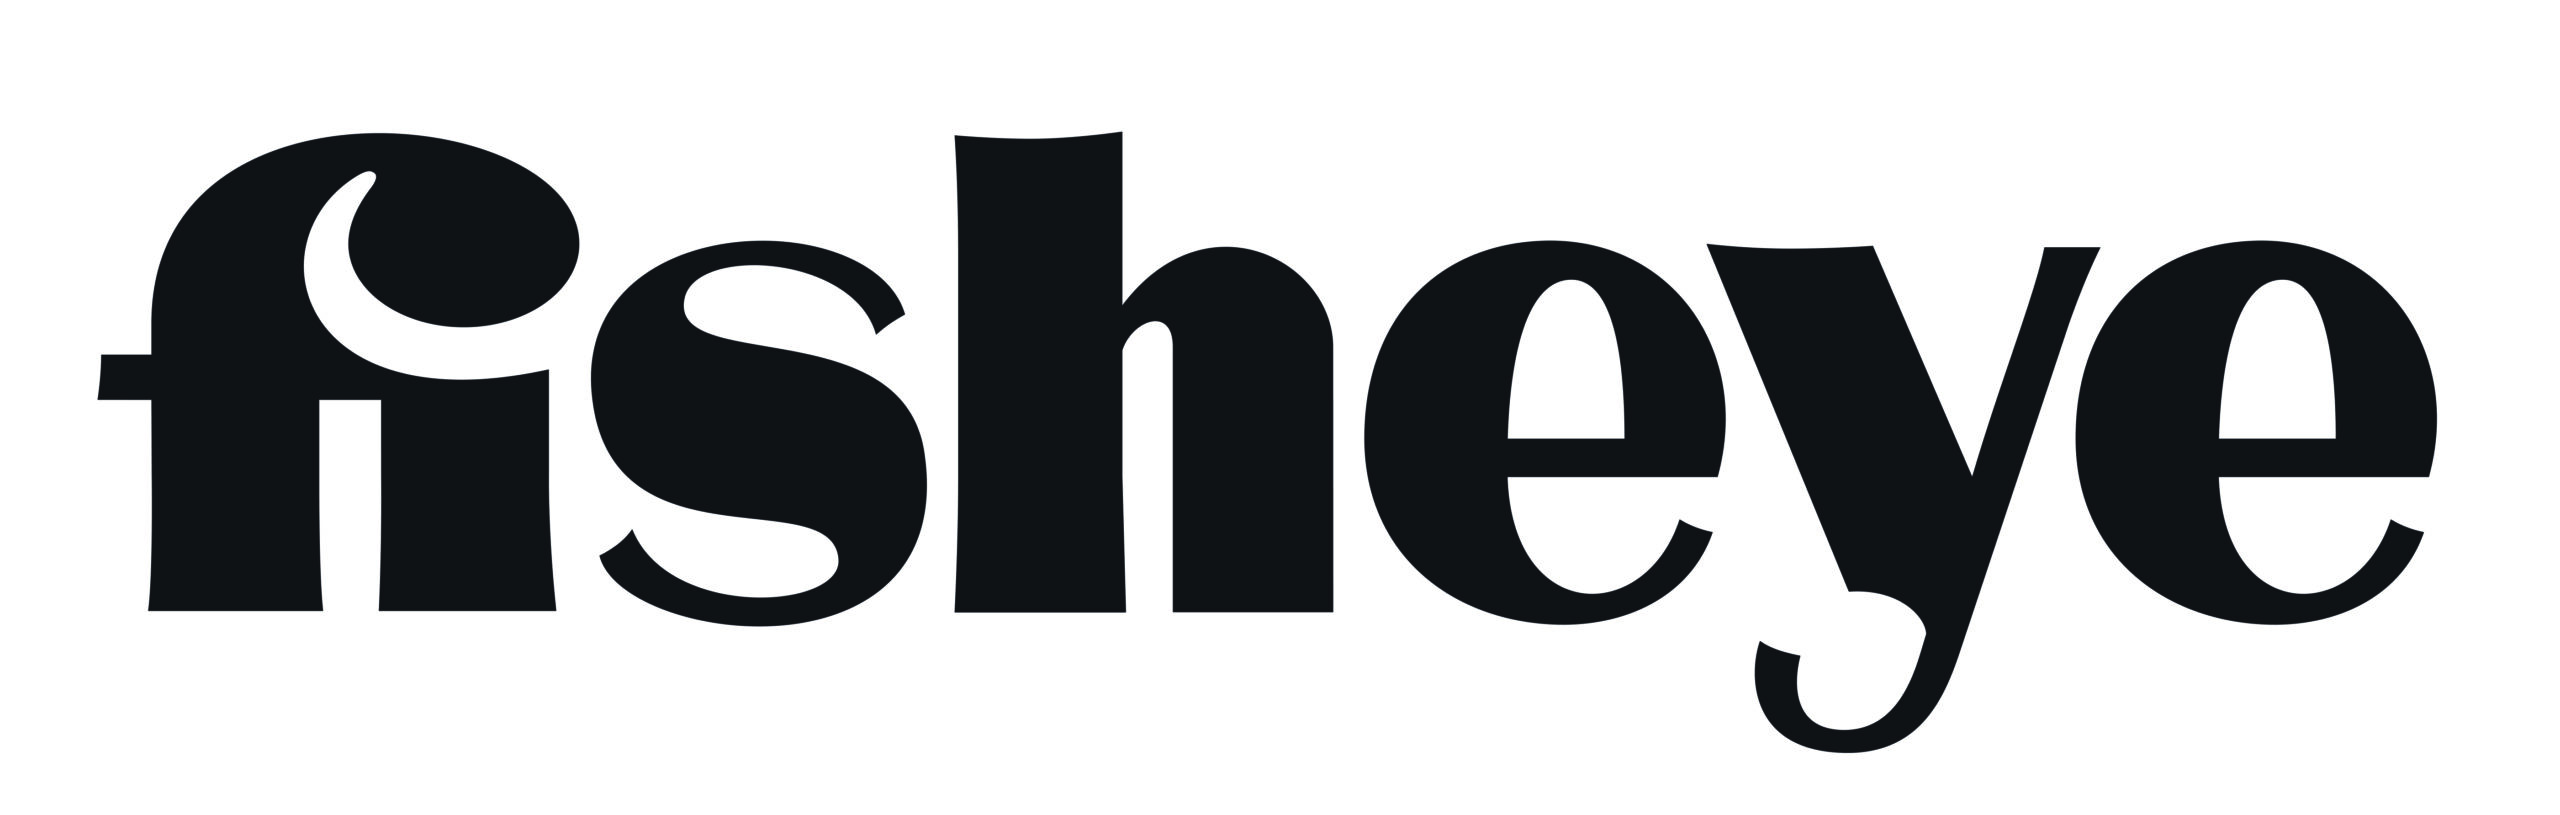 logo-fisheye